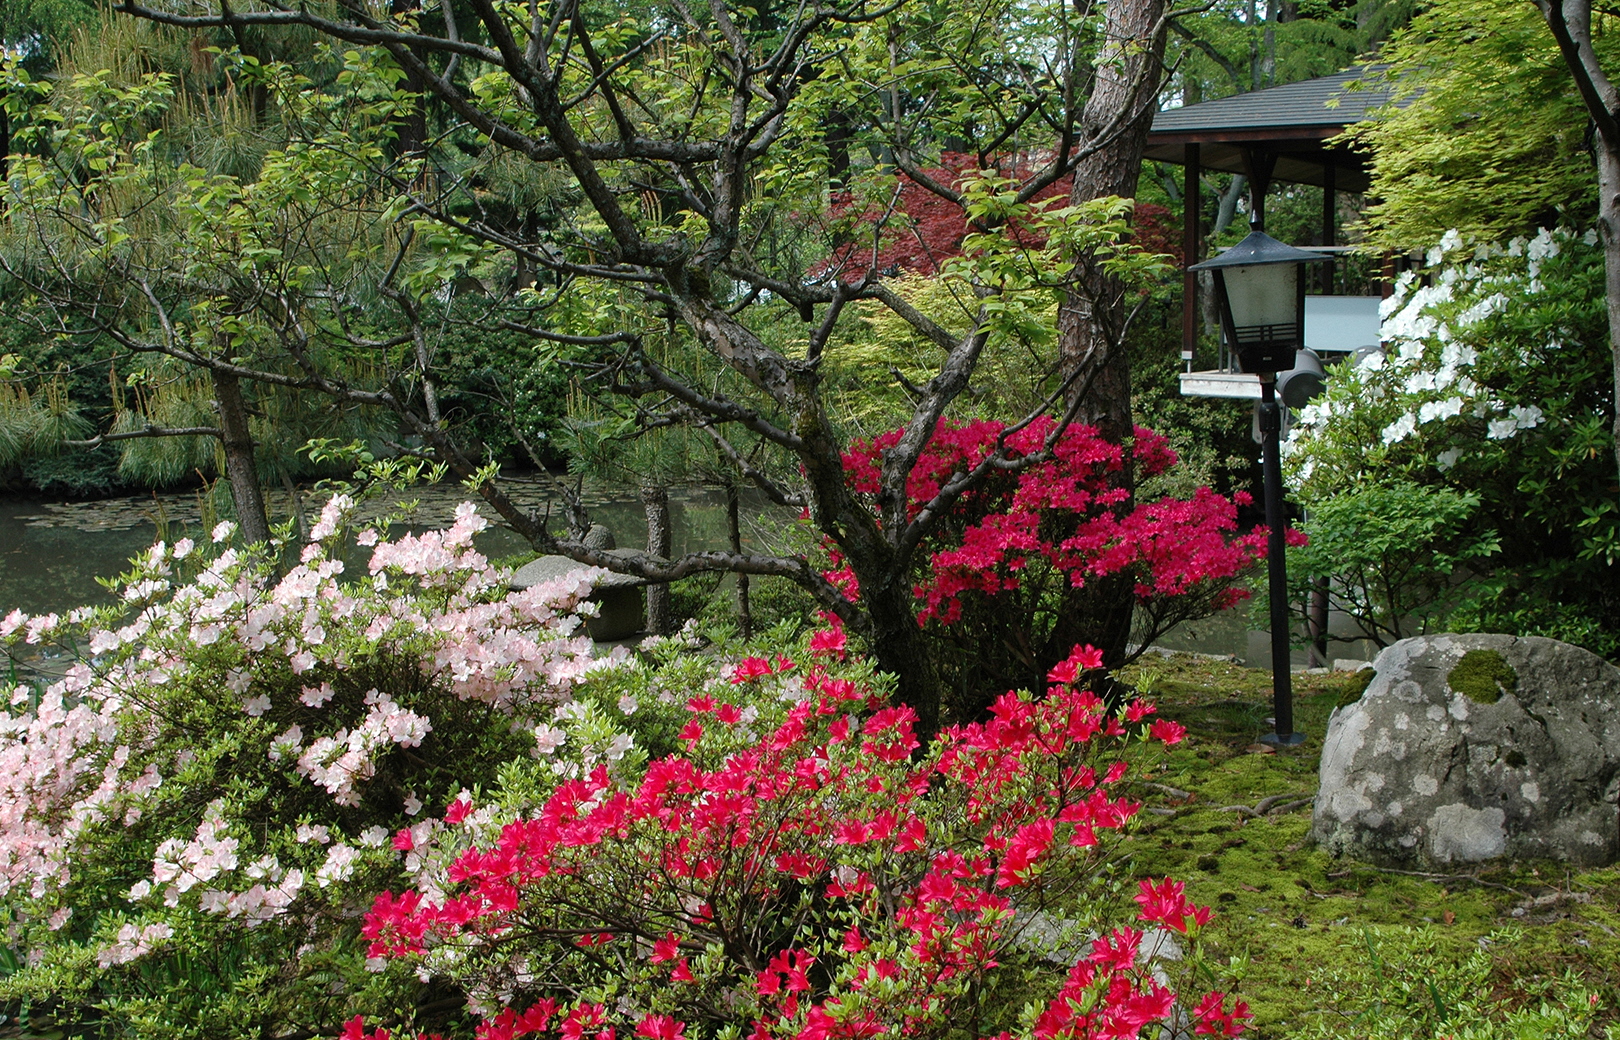 the 5,000 square meter Shosen-ko Garden(02)